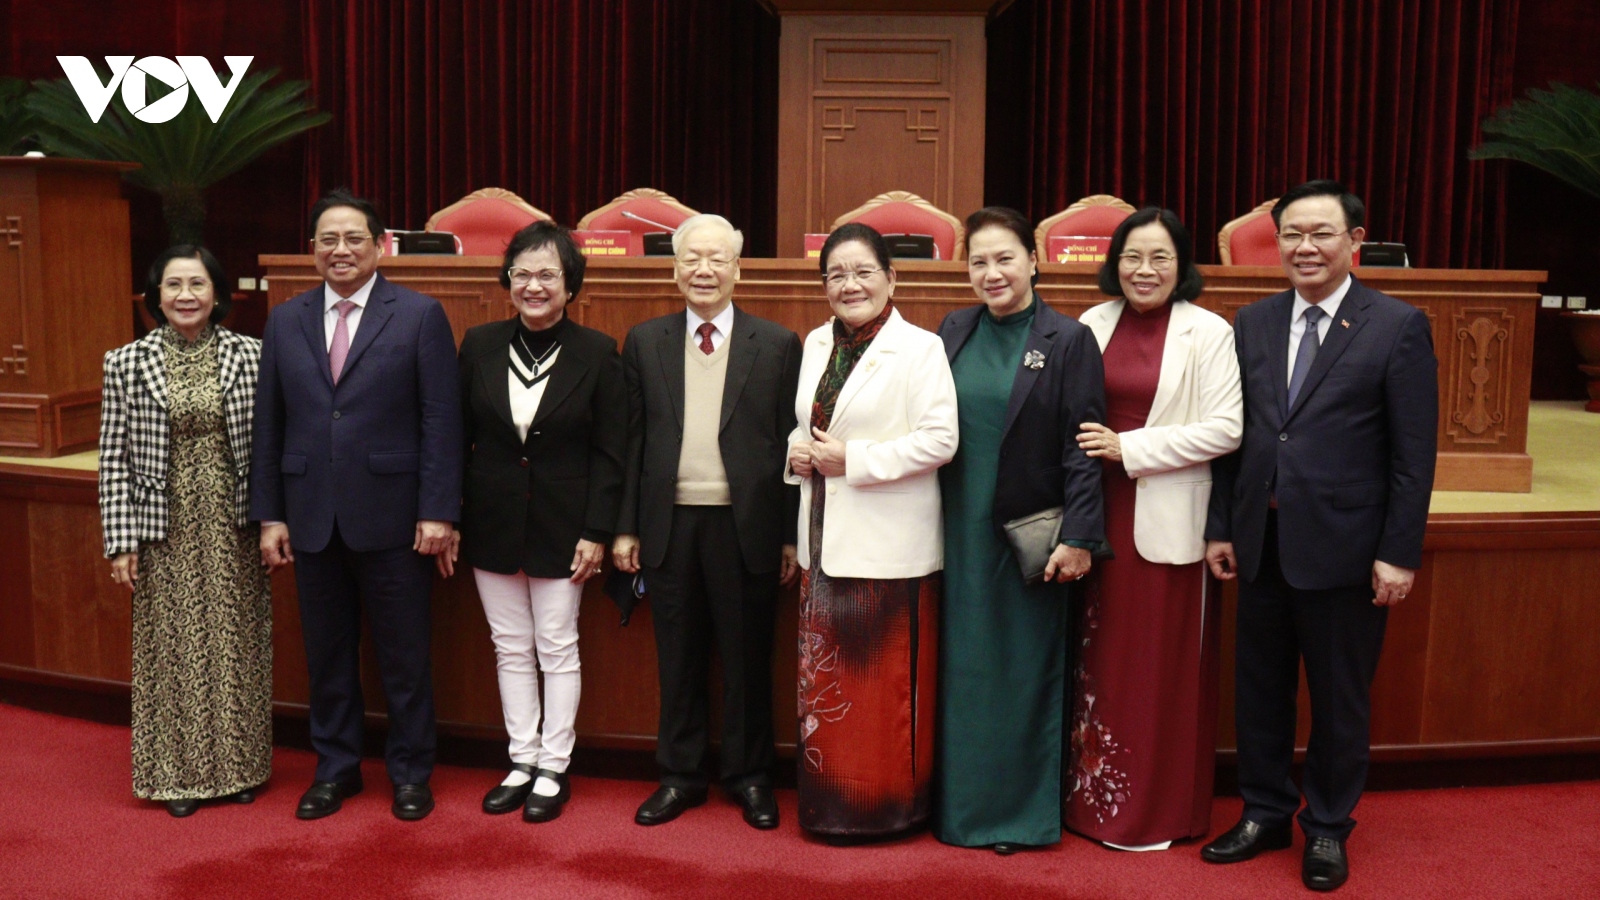 Tổng Bí thư Nguyễn Phú Trọng: Nguyên lãnh đạo cấp cao là chỗ dựa vững chắc, kiên định